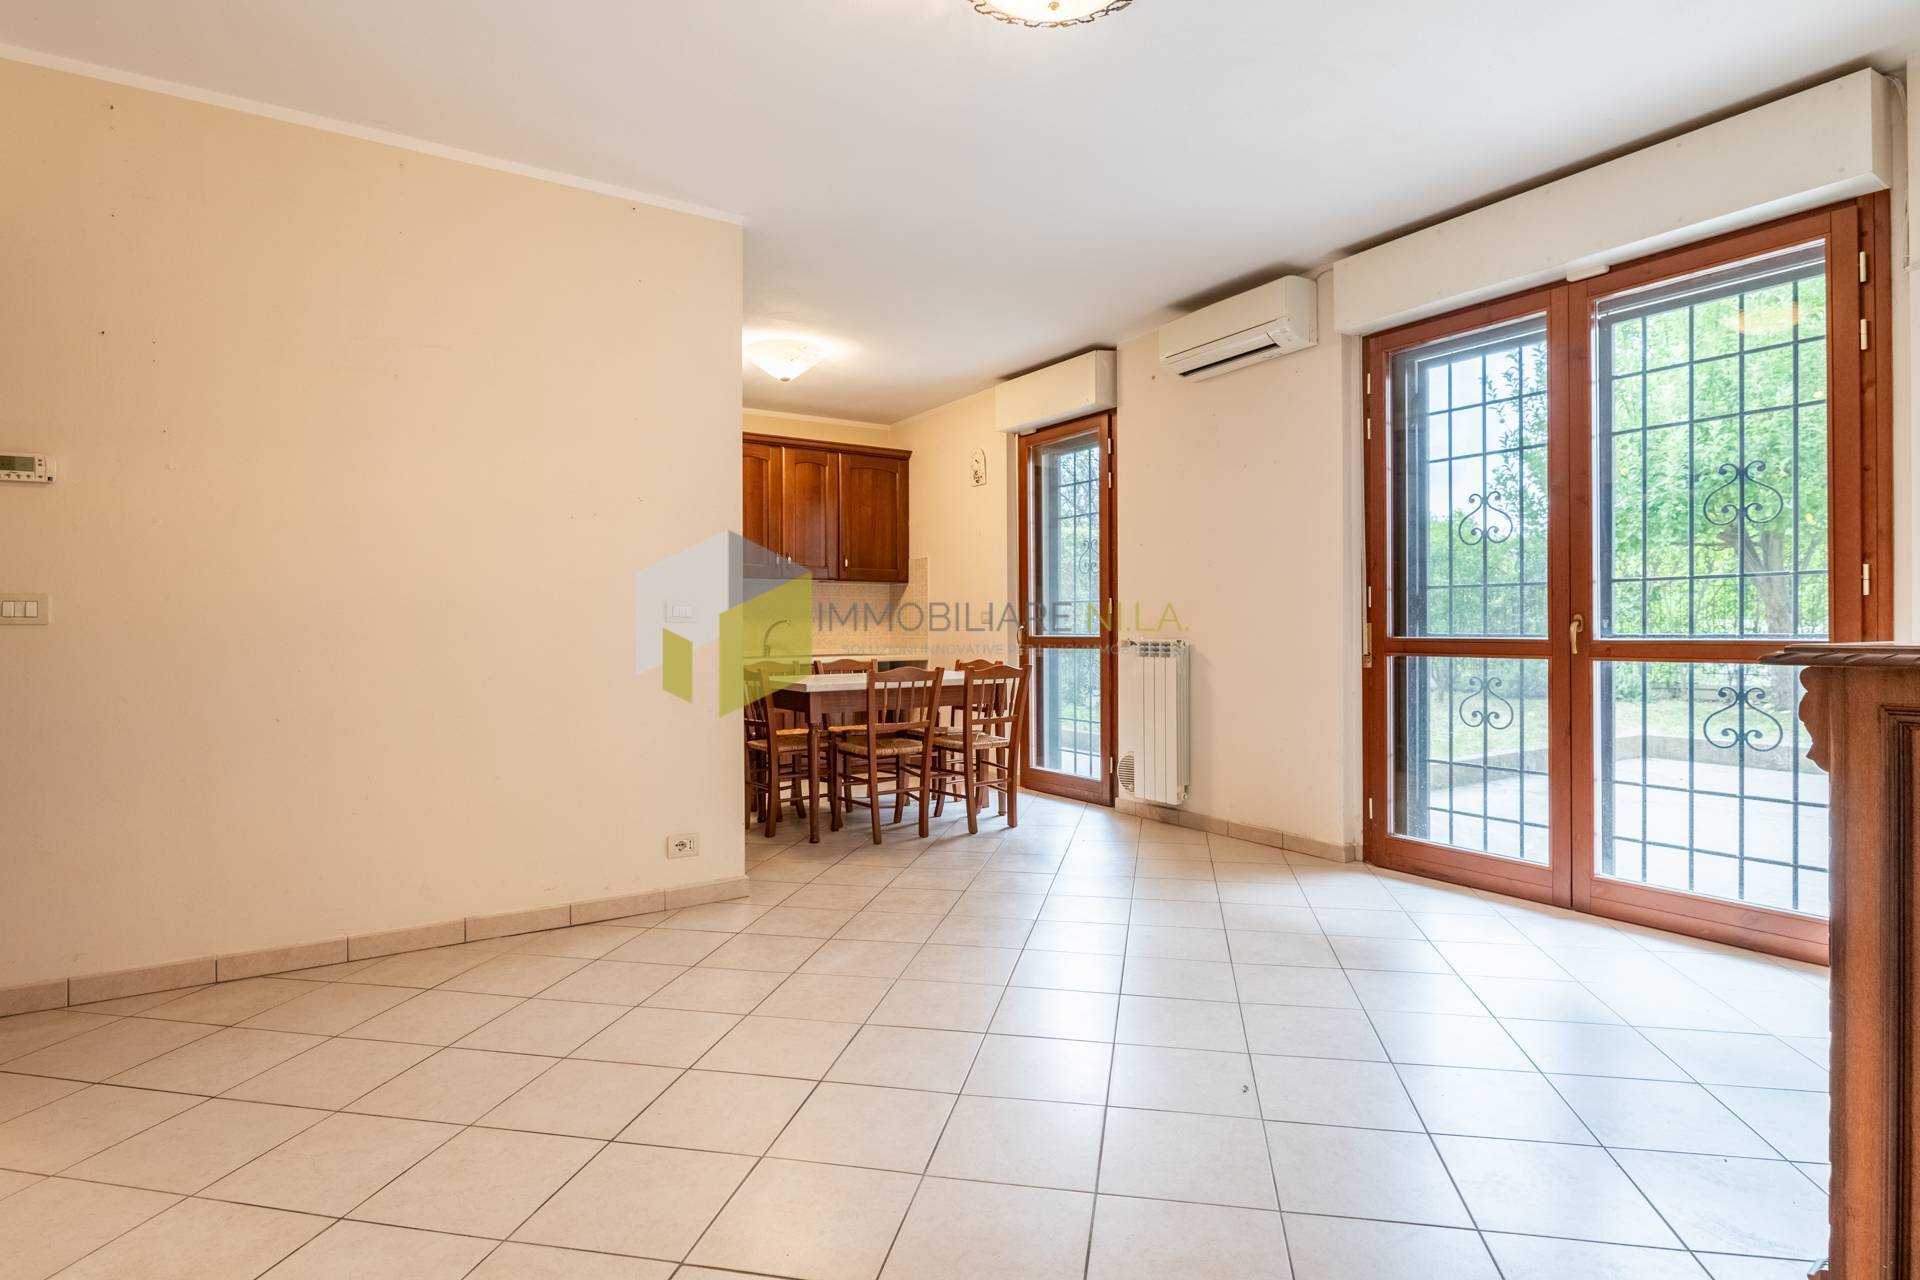 Appartamento in vendita a Pisa, 4 locali, zona gnano, prezzo € 285.000 | PortaleAgenzieImmobiliari.it